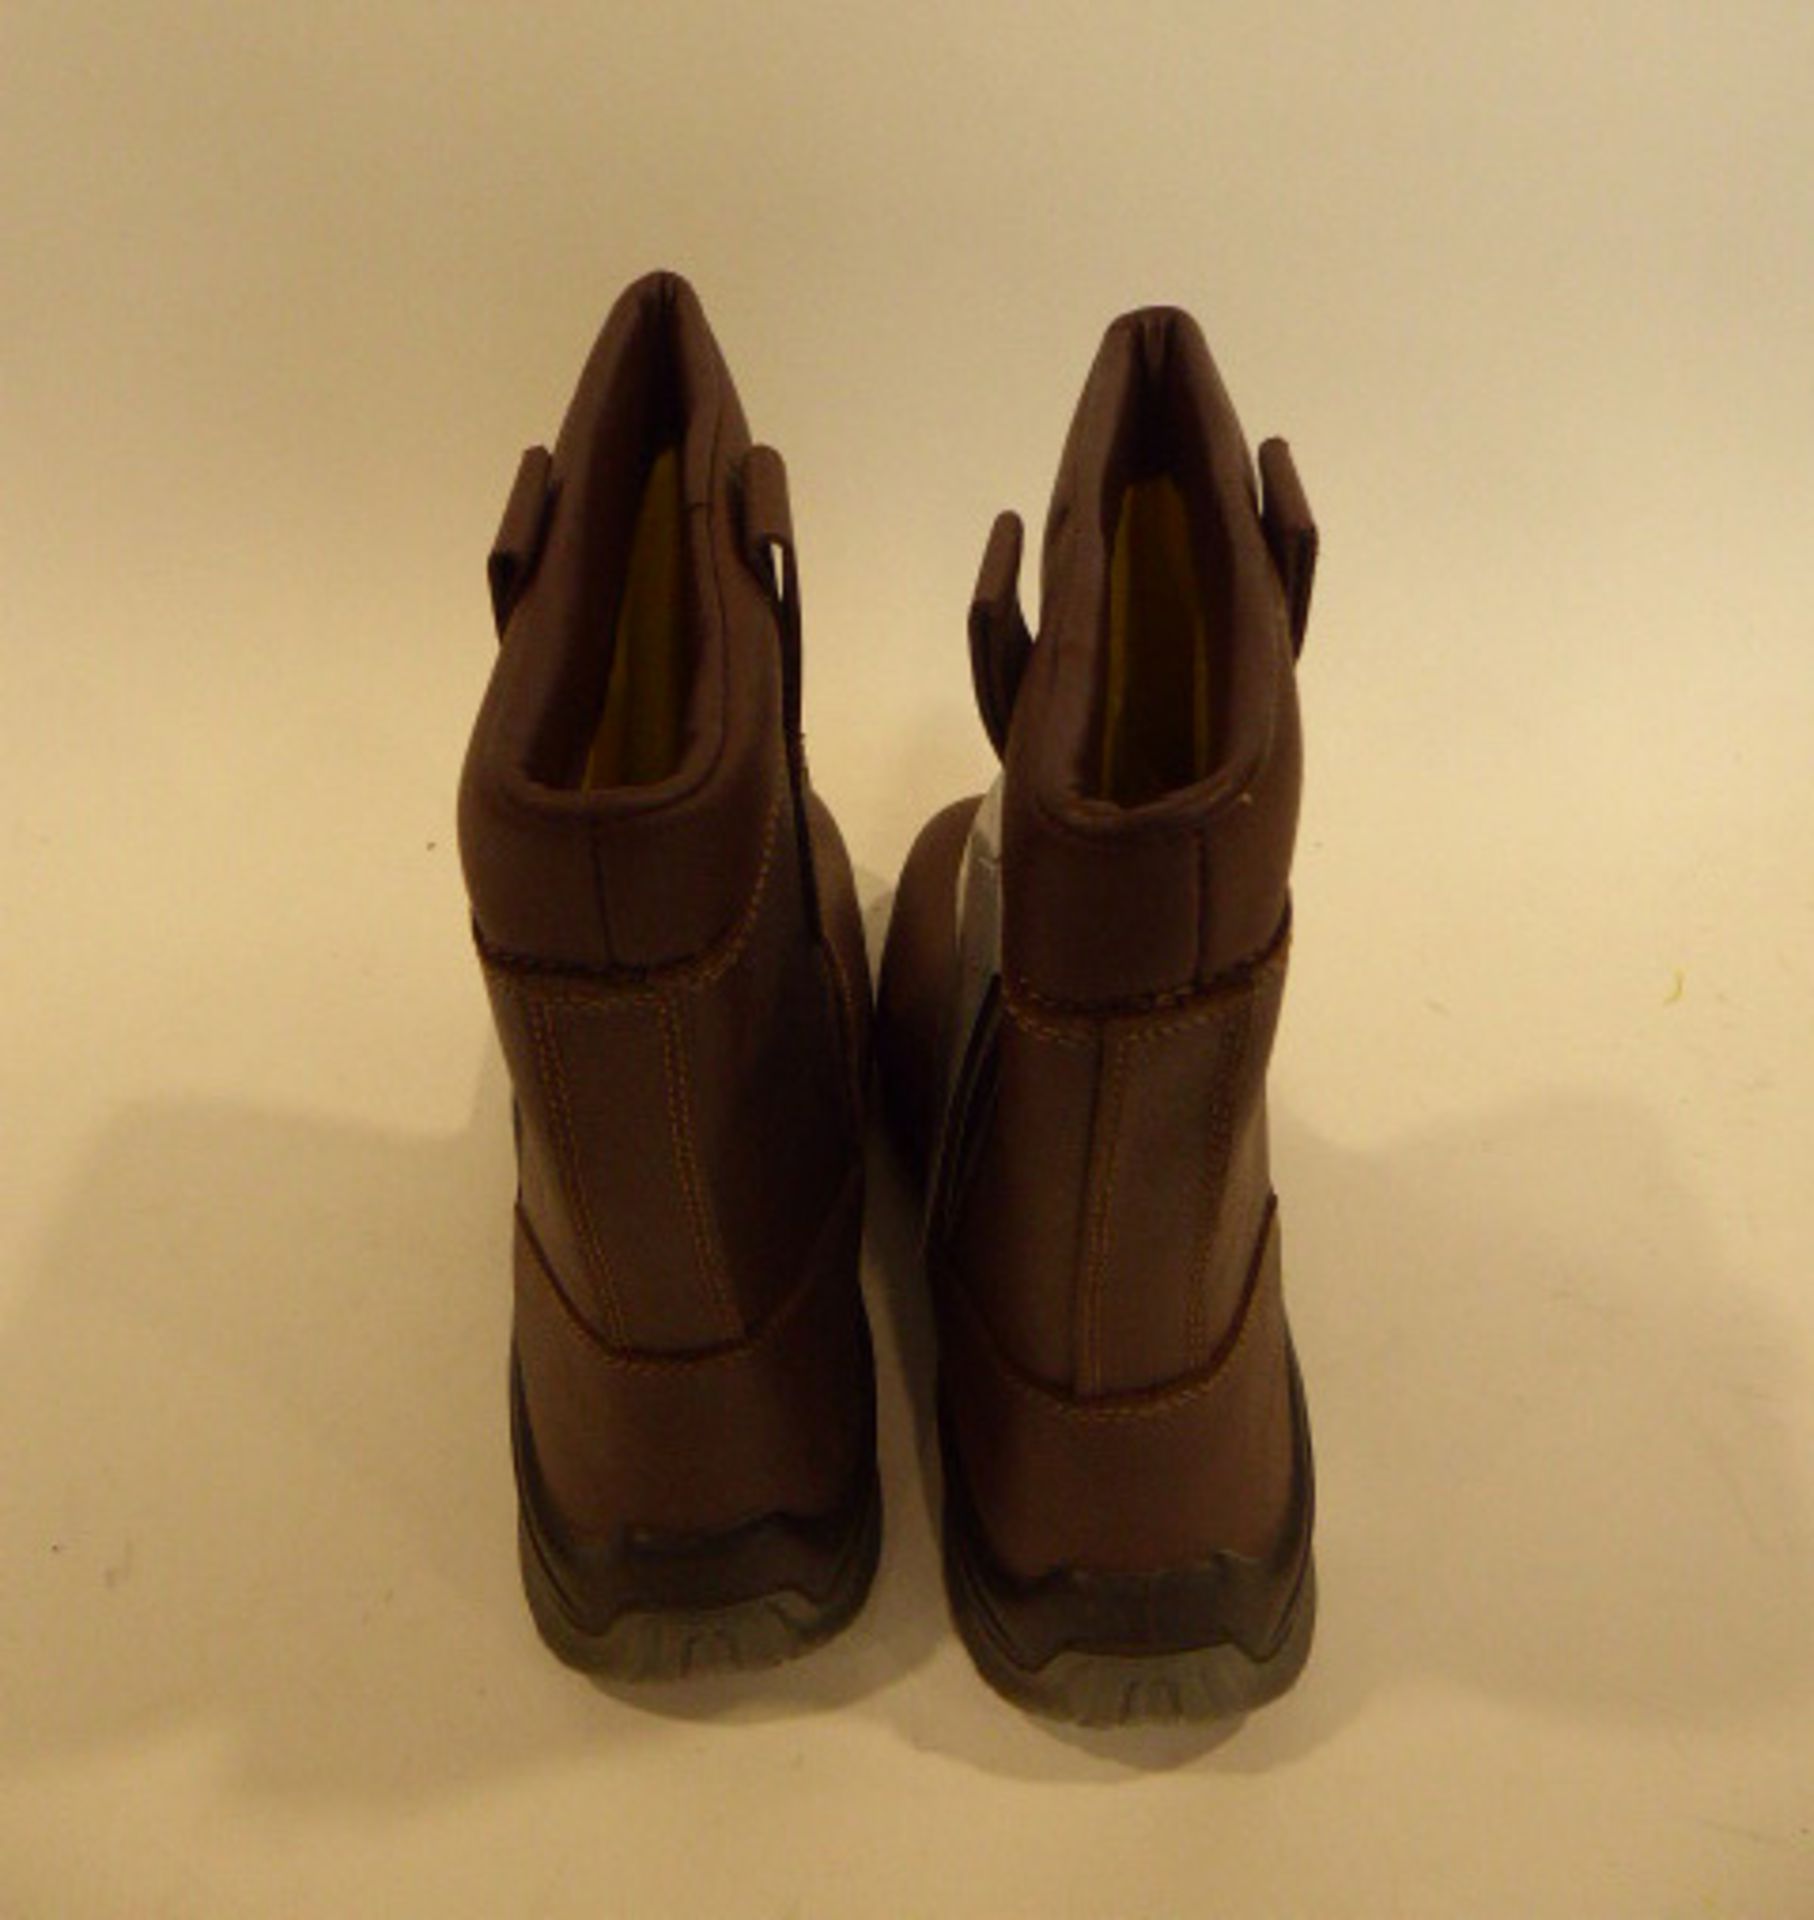 Diadora safety boots size EU 41 - Image 3 of 3